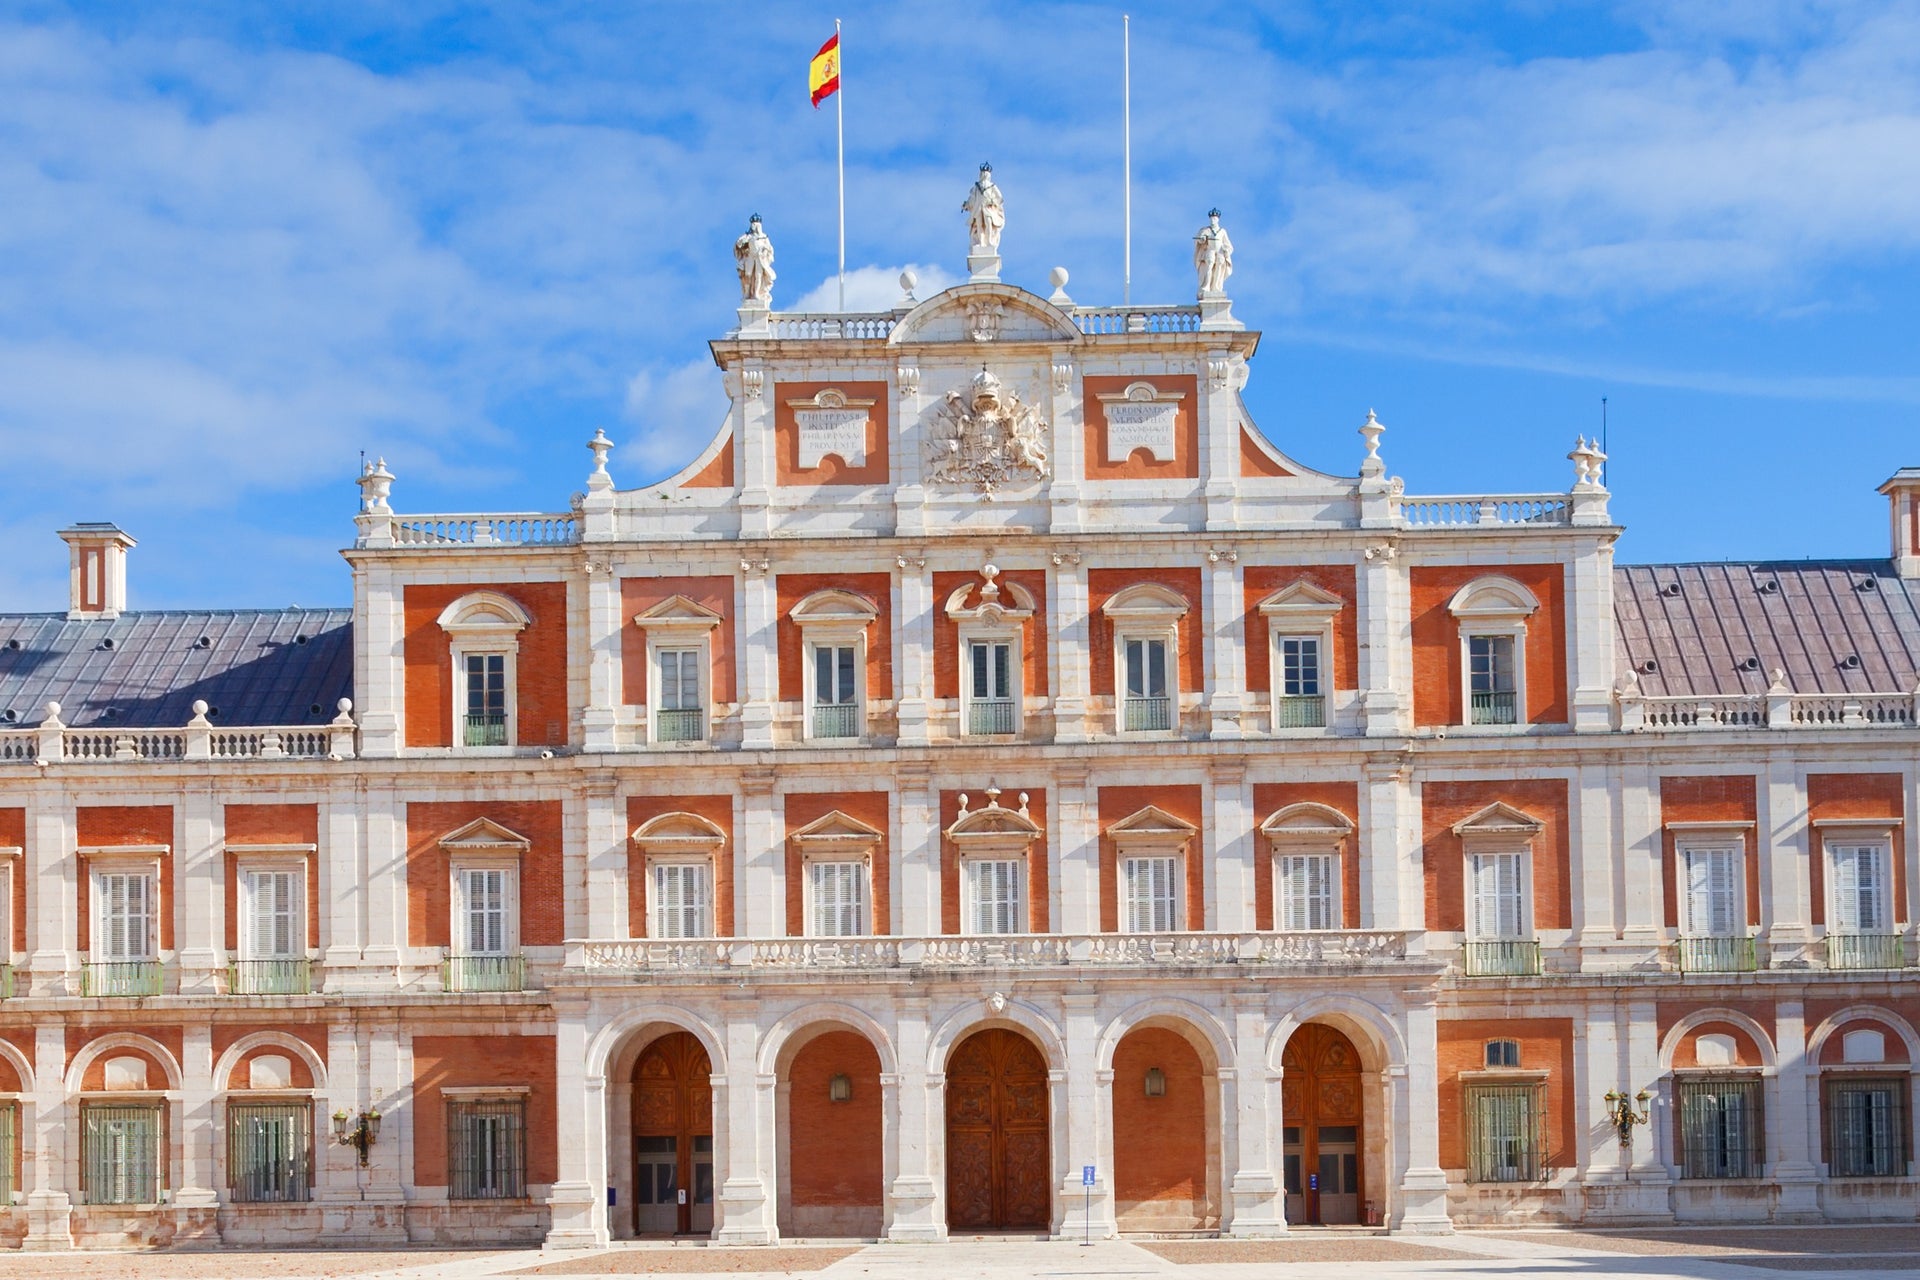 Visita guiada por el Palacio de Aranjuez